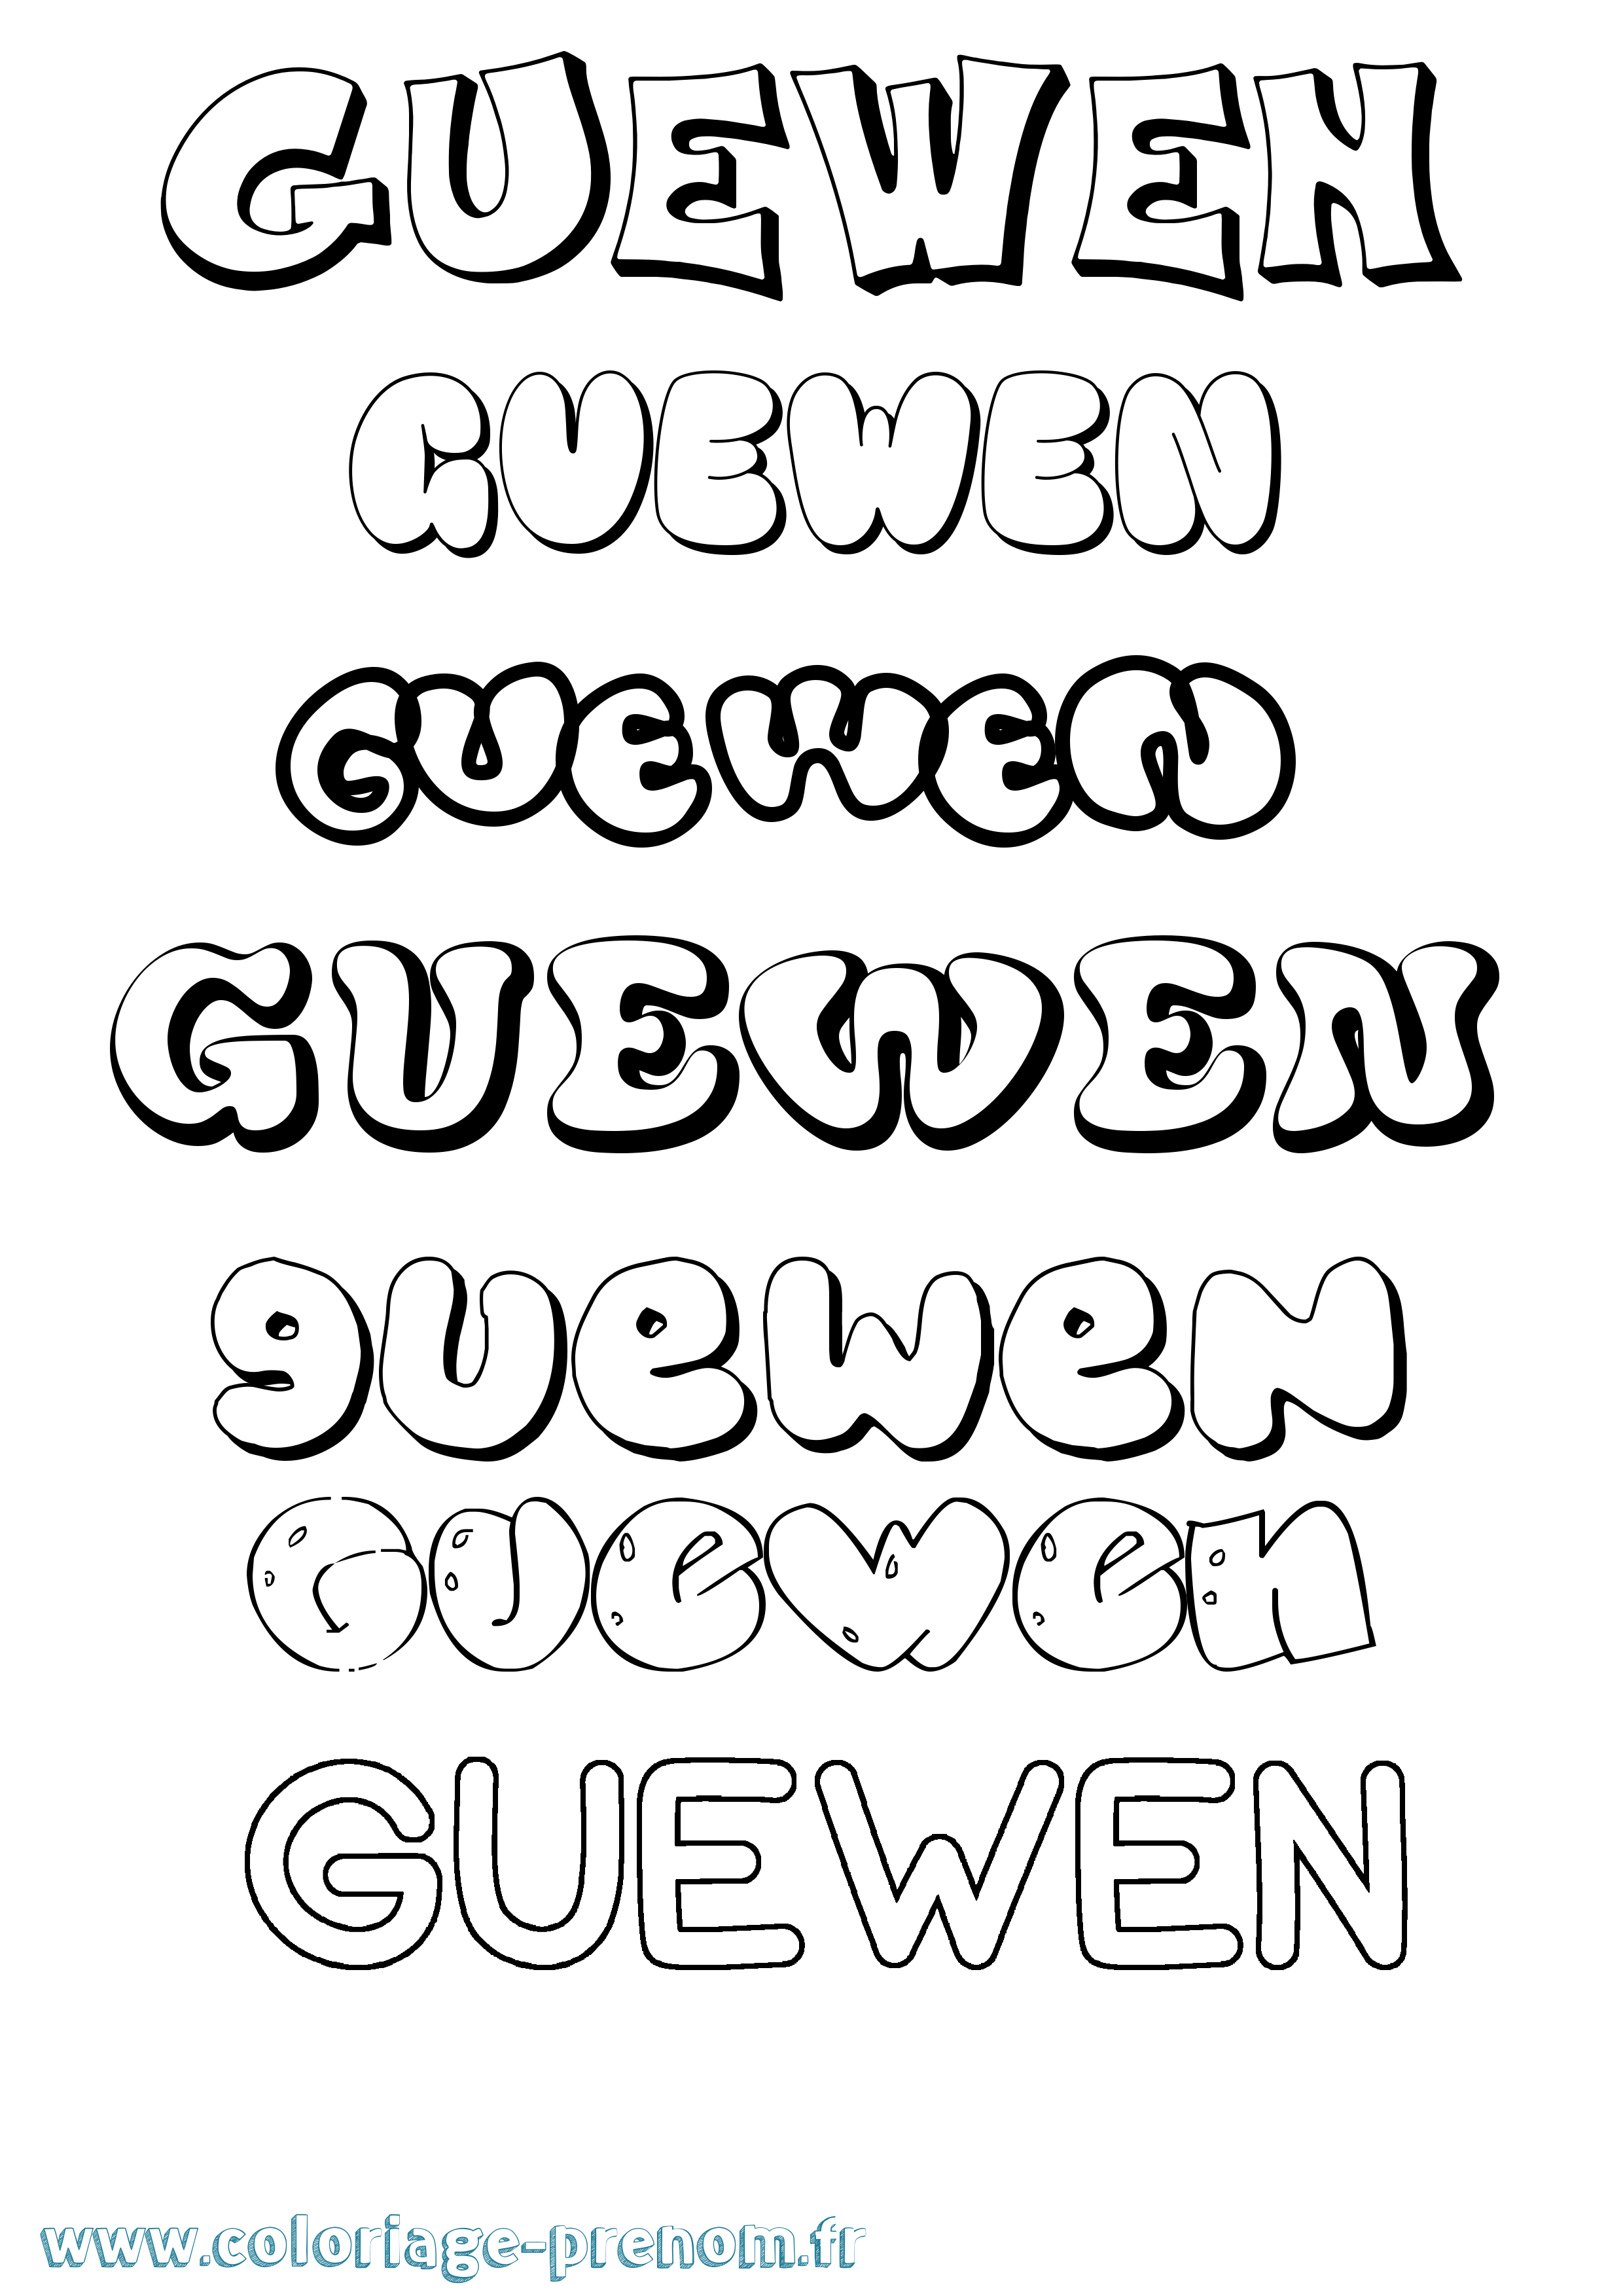 Coloriage prénom Guewen Bubble